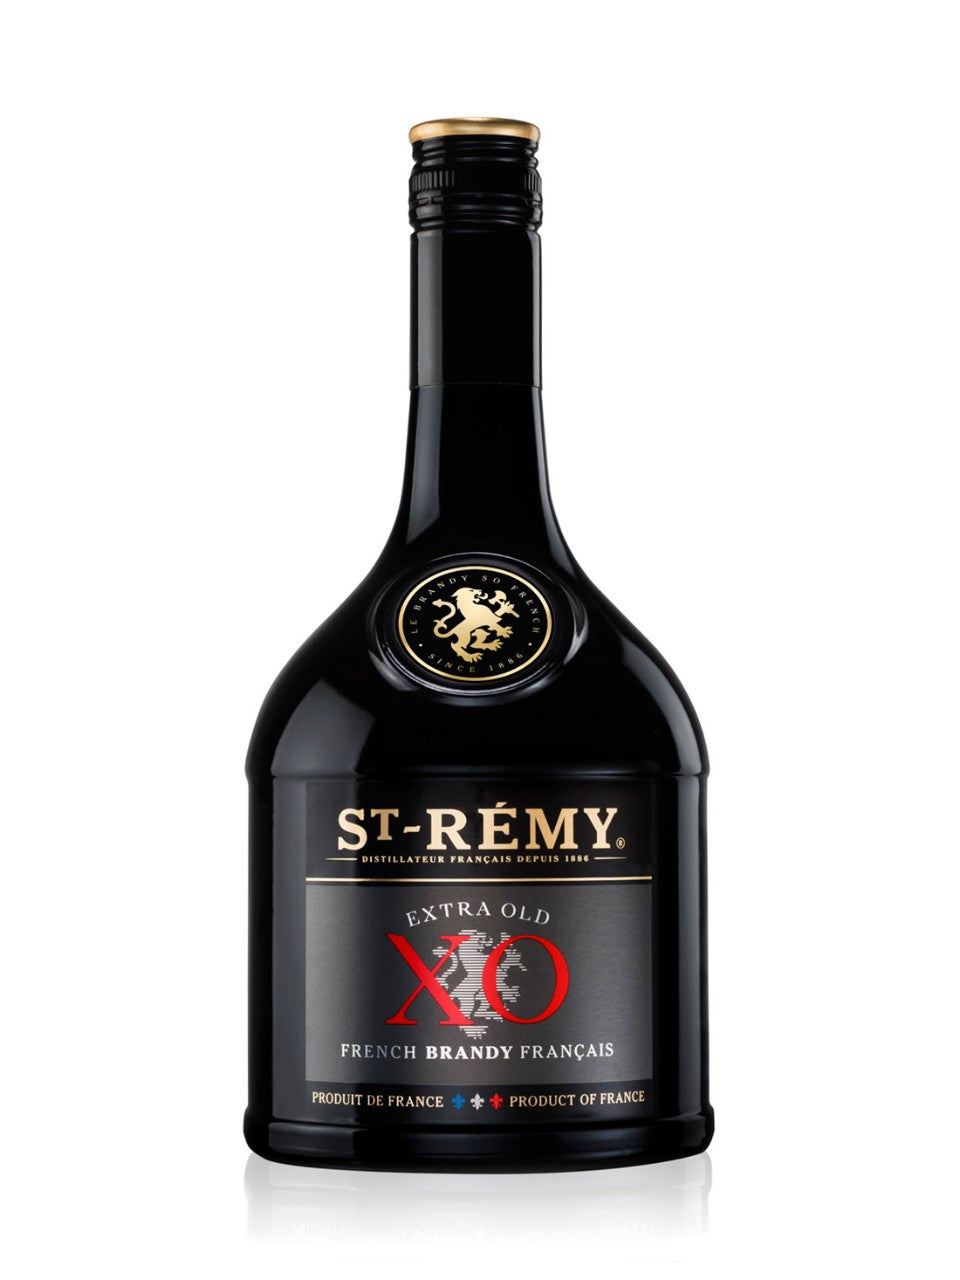 St Remy XO Brandy 750 mL bottle